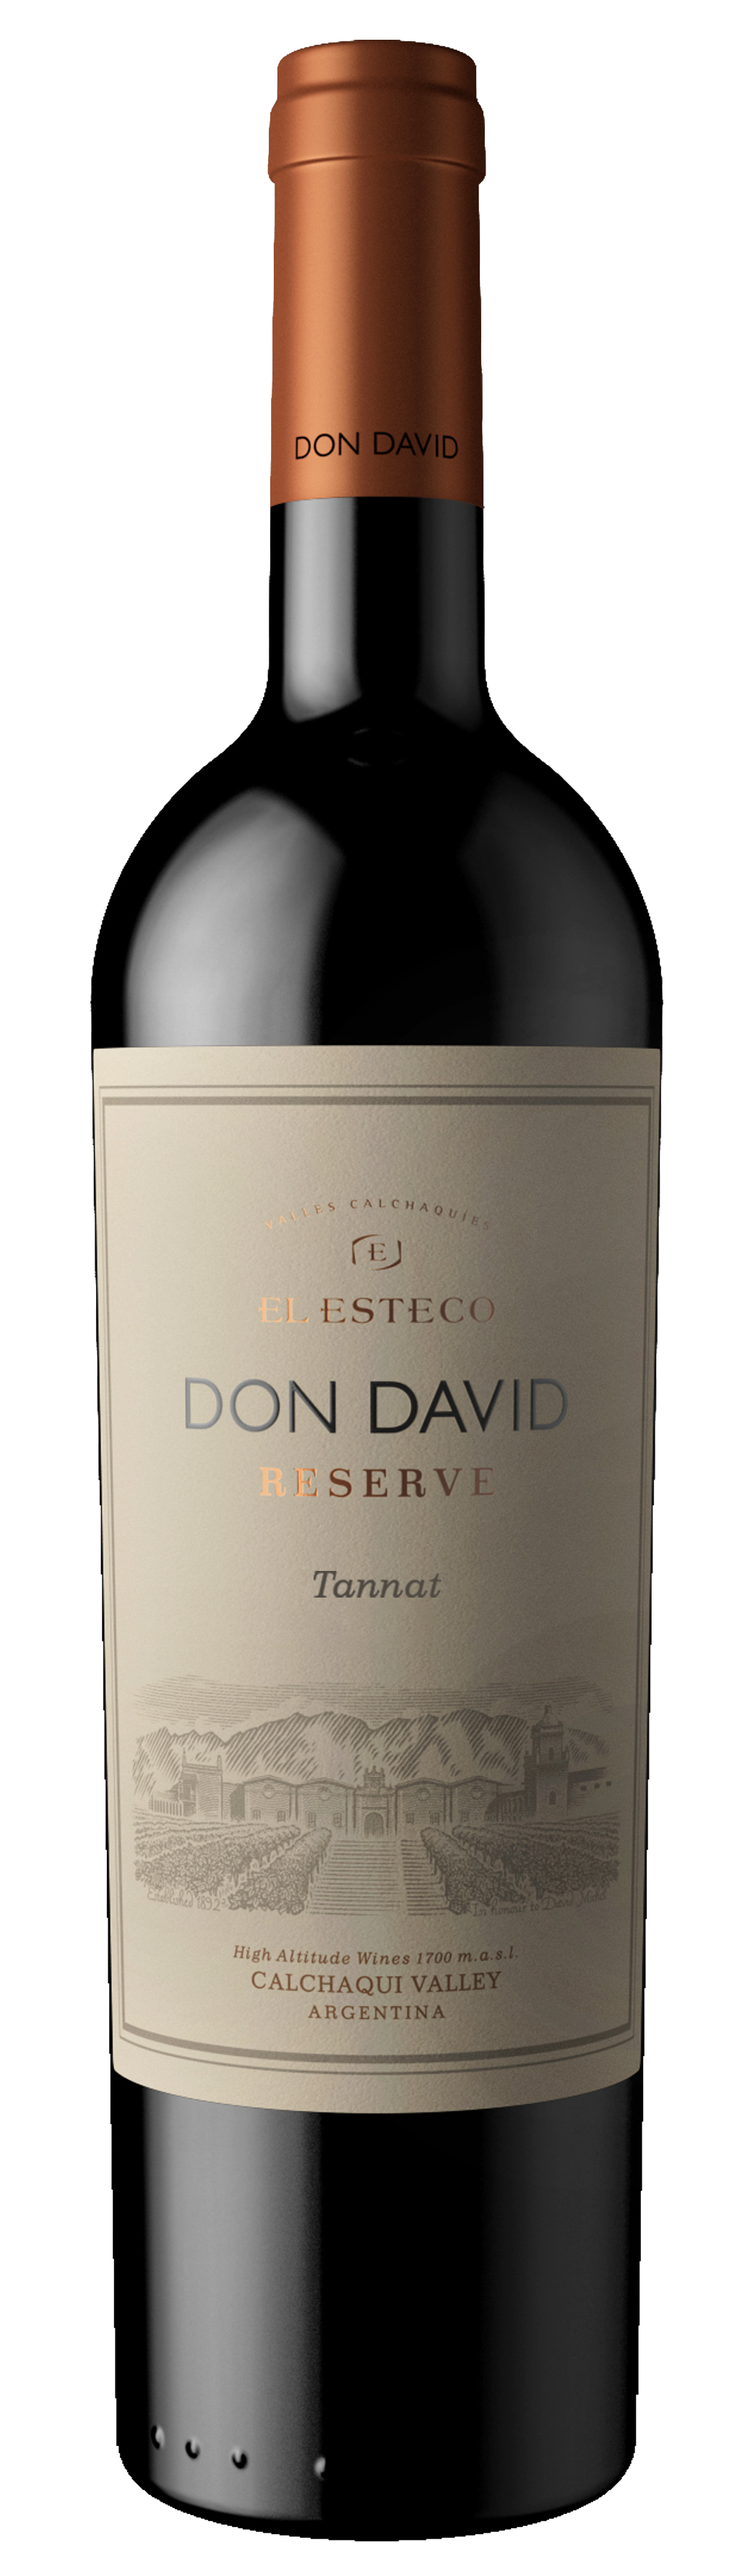 El Esteco Don David Reserve Tannat